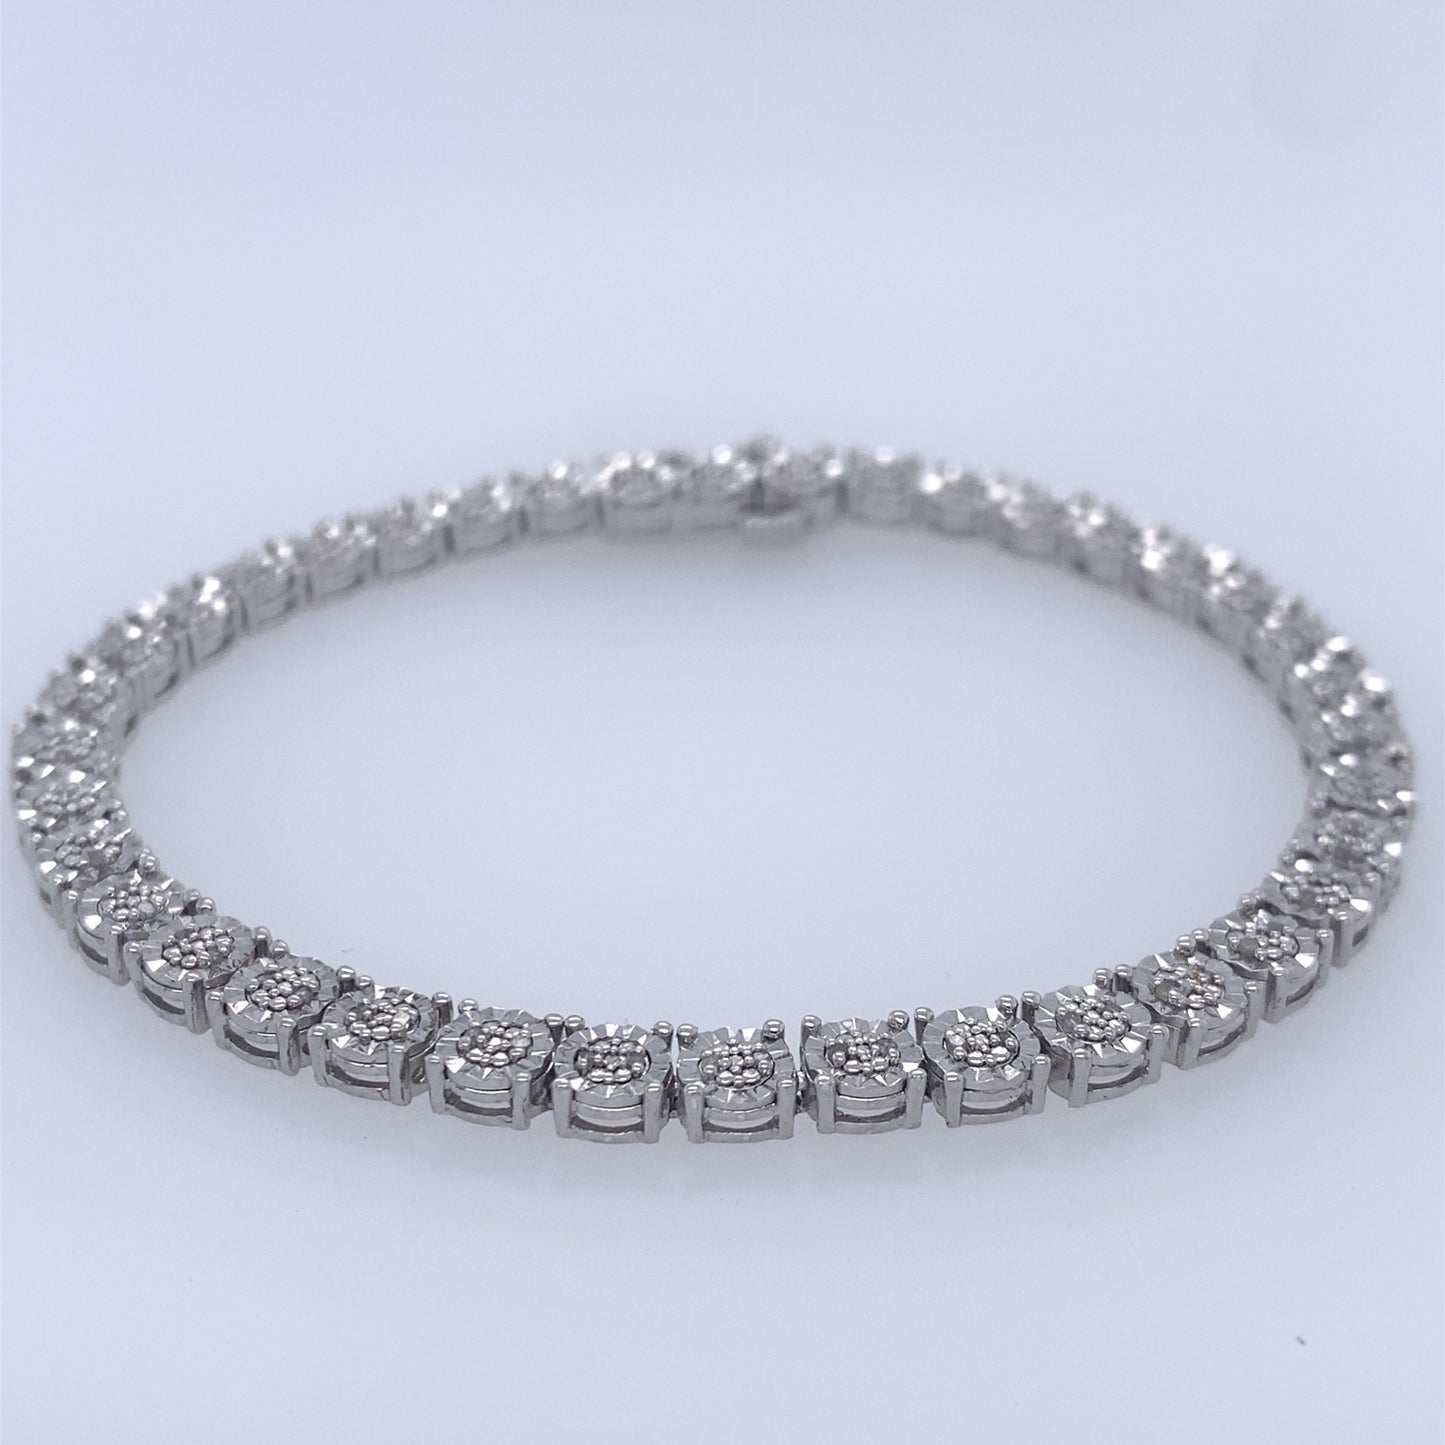 925 Sterling Silver Diamond Cut Tennis Bracelet